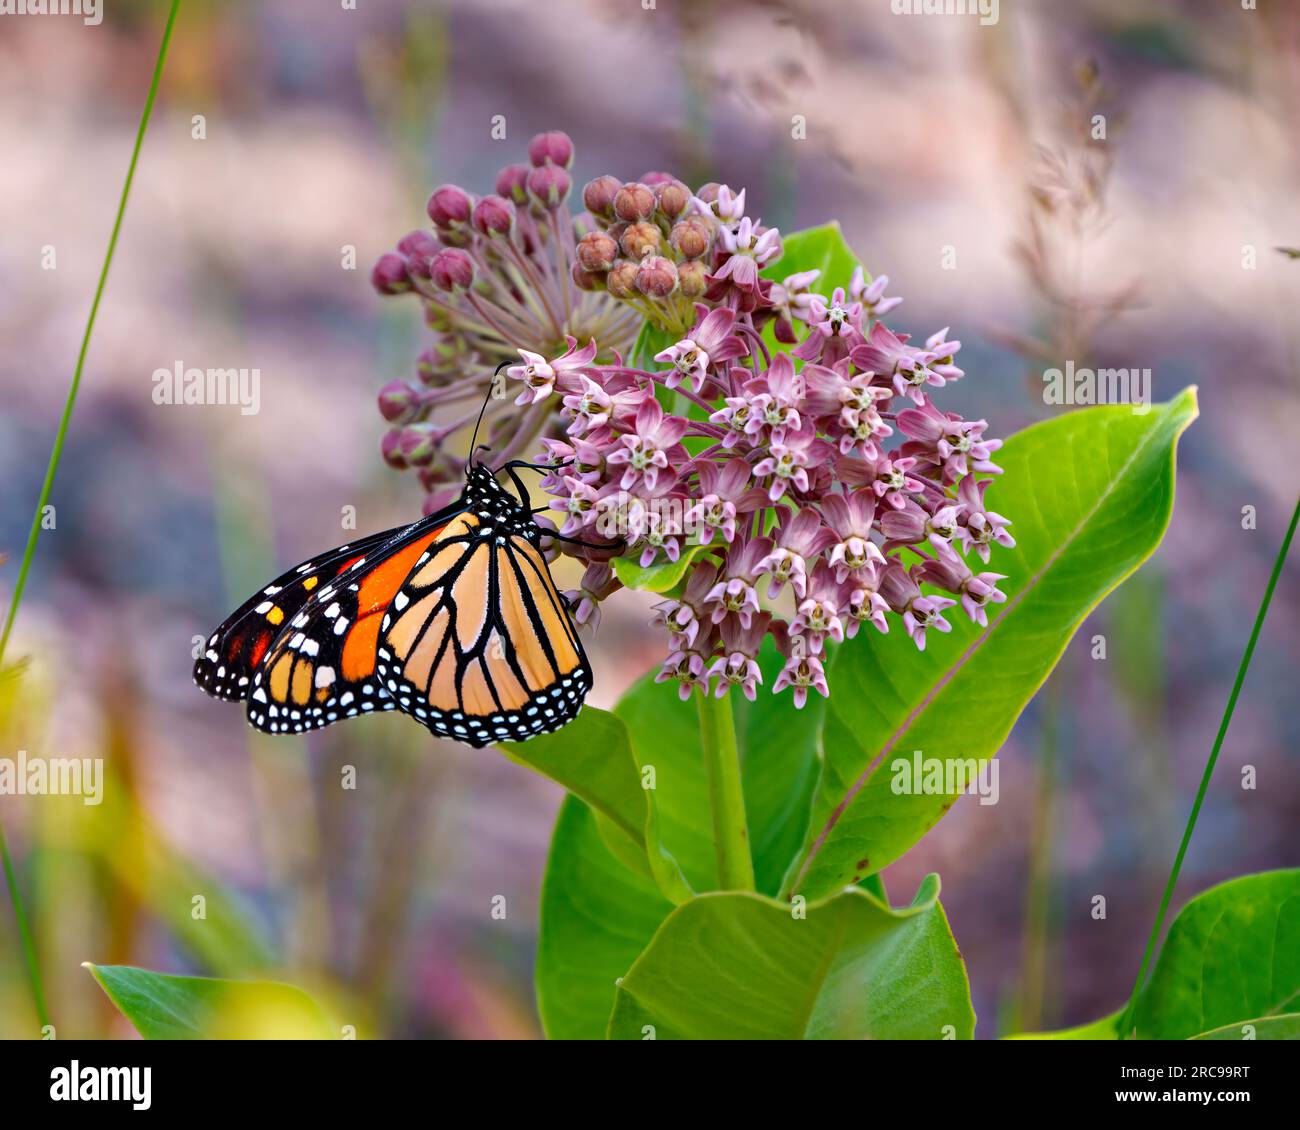 Vista lateral de la mariposa monarca bebiendo o bebiendo néctar de una planta de algodoncillo con un fondo colorido en su entorno y hábitat. Foto de stock